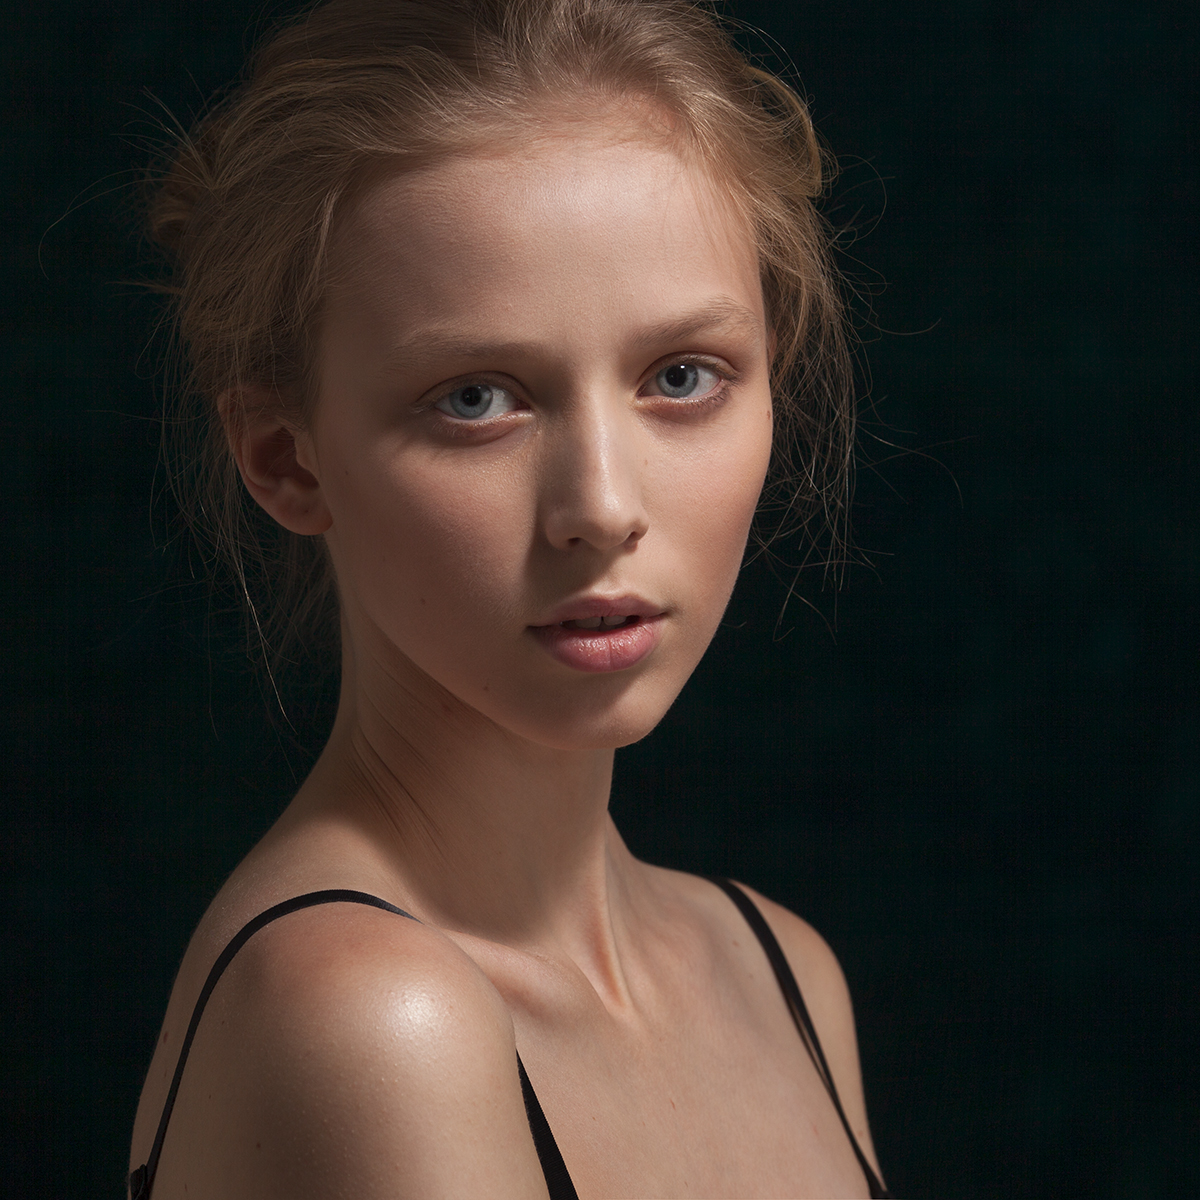 model modeltest Testshoot portrait beauty